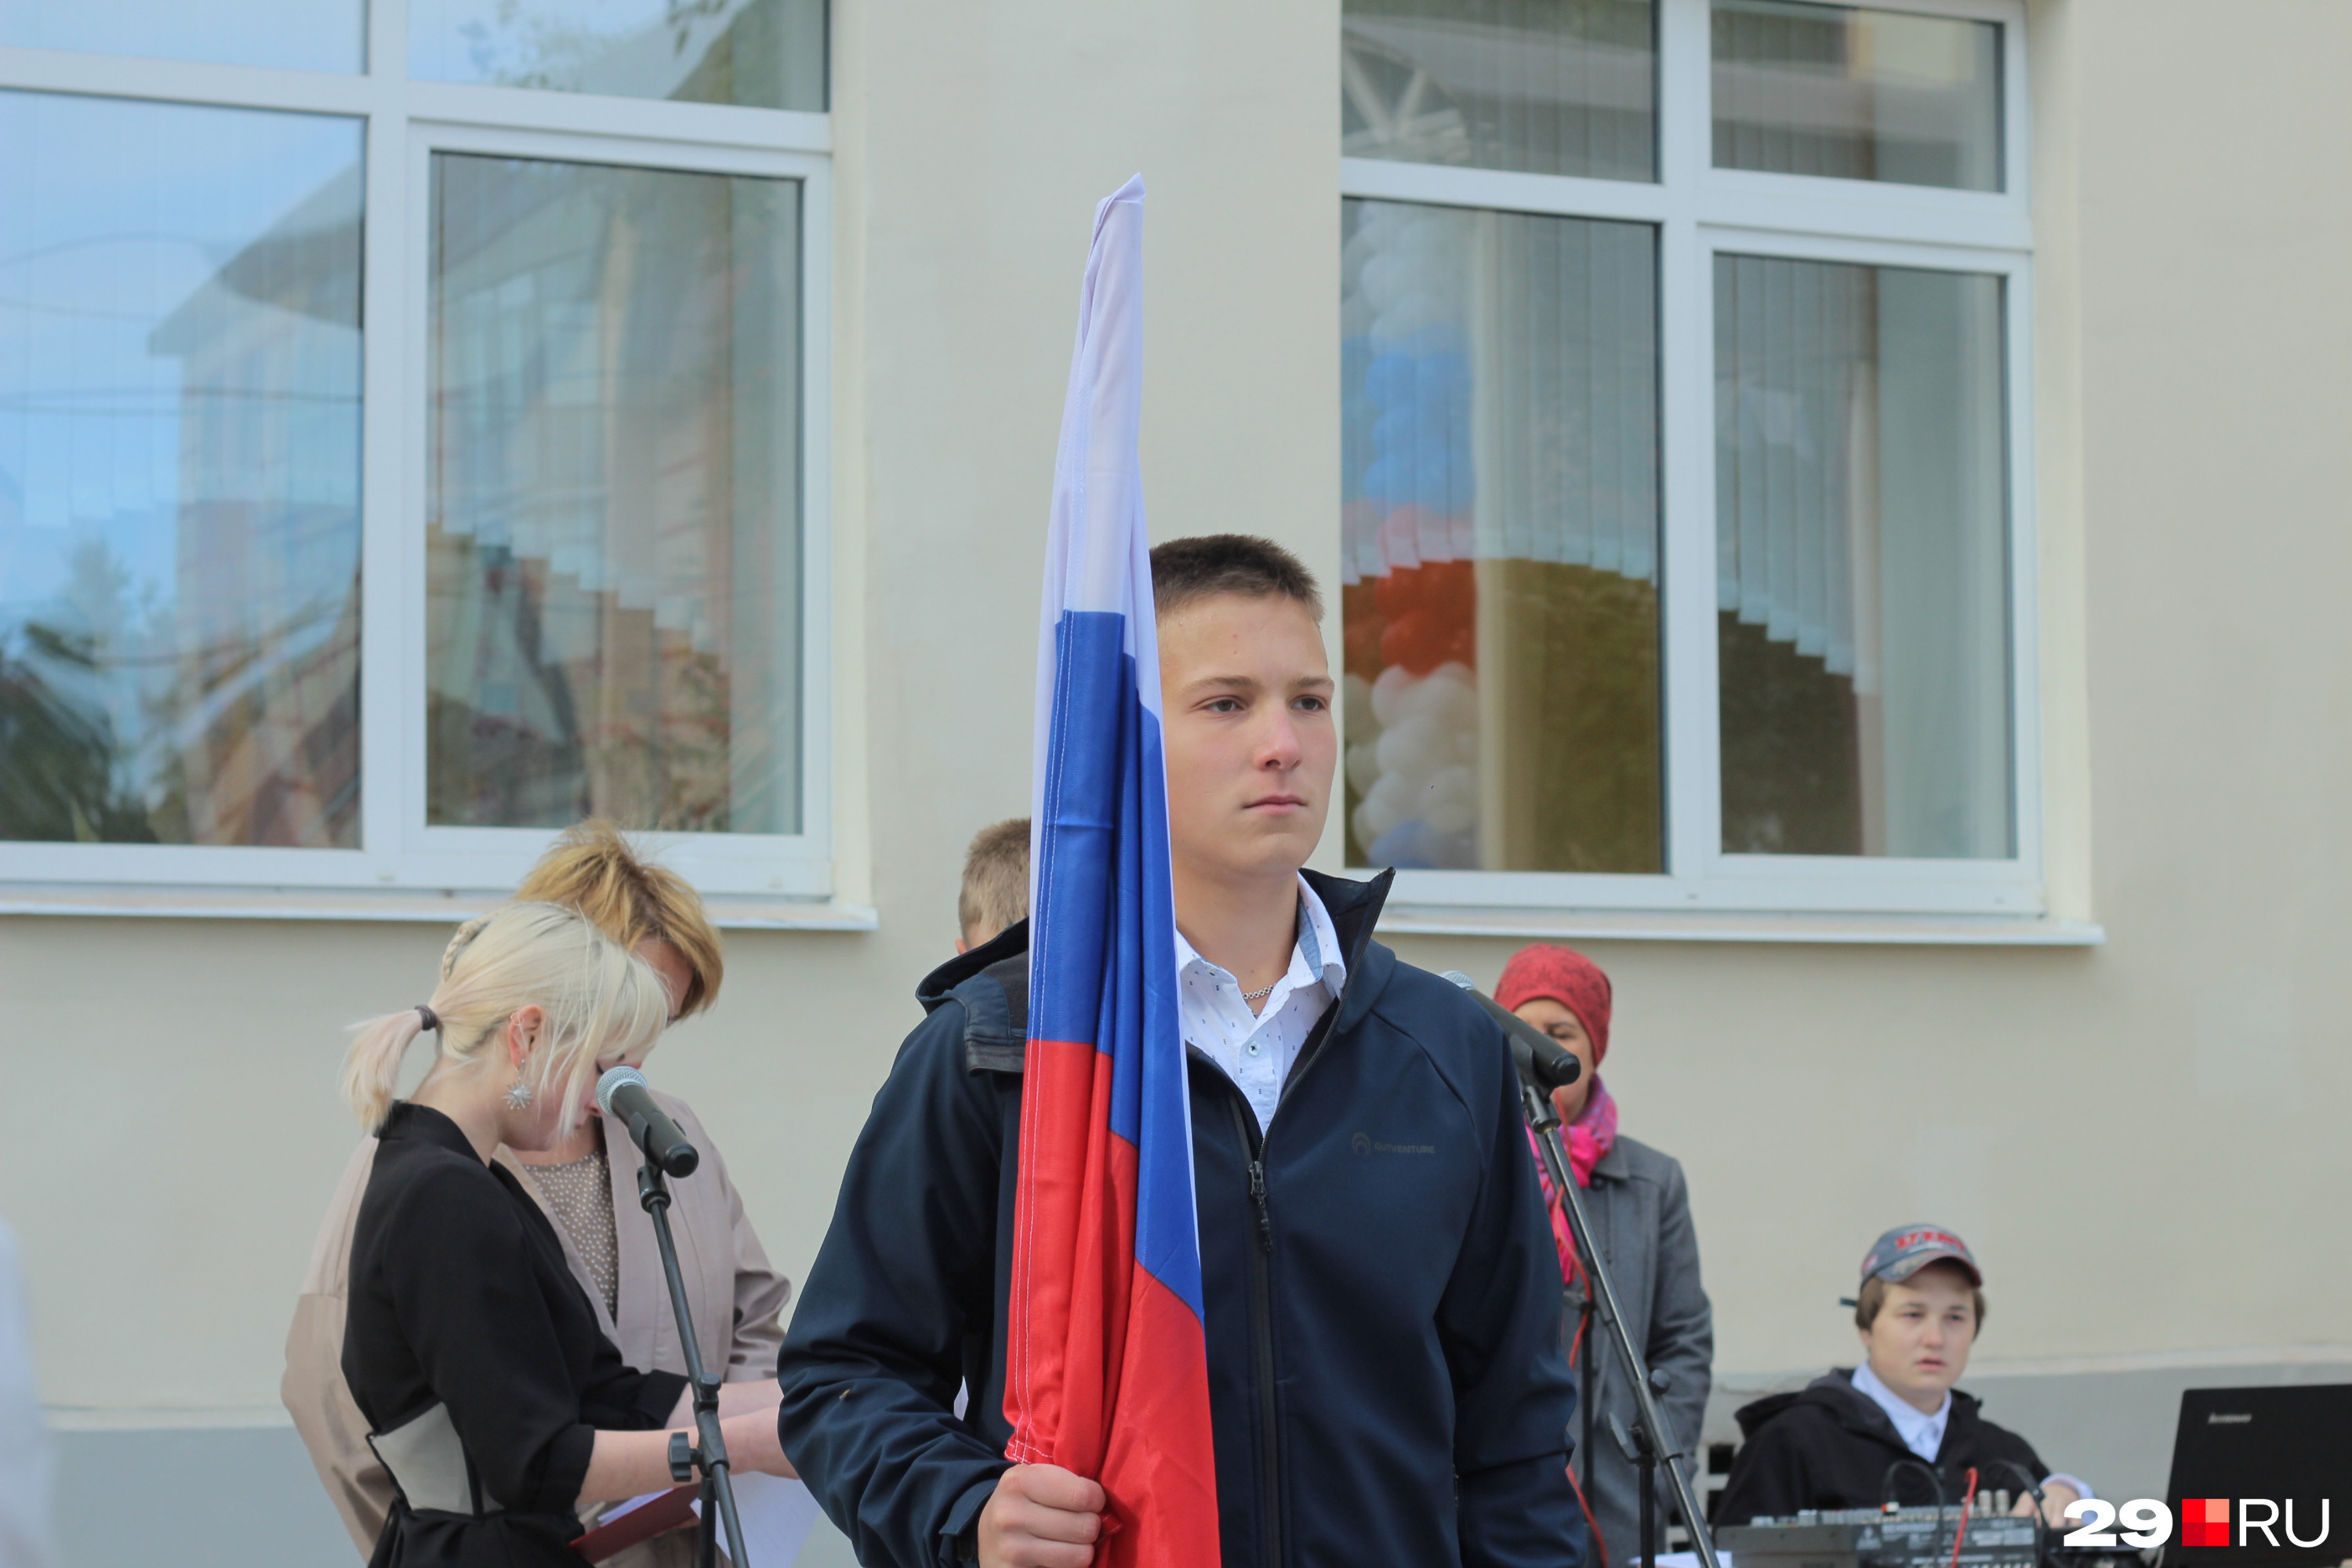 Как и в других школах, праздник начался с торжественной <a href="https://29.ru/text/education/2022/08/18/71582444/" class="_" target="_blank">церемонии выноса российского флага</a>